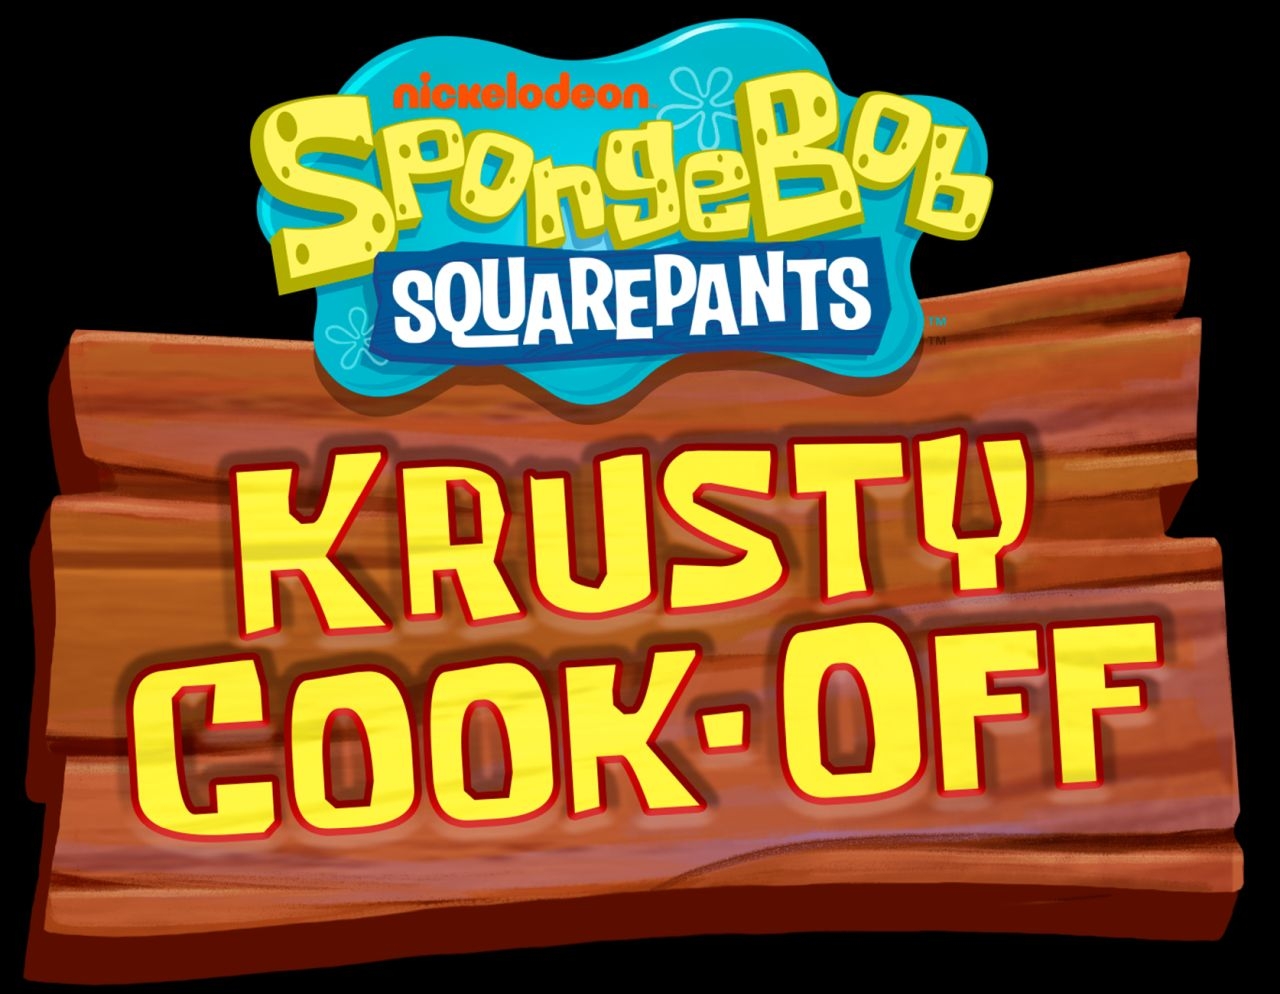 how to reset spongebob krusty cook-off on iphone